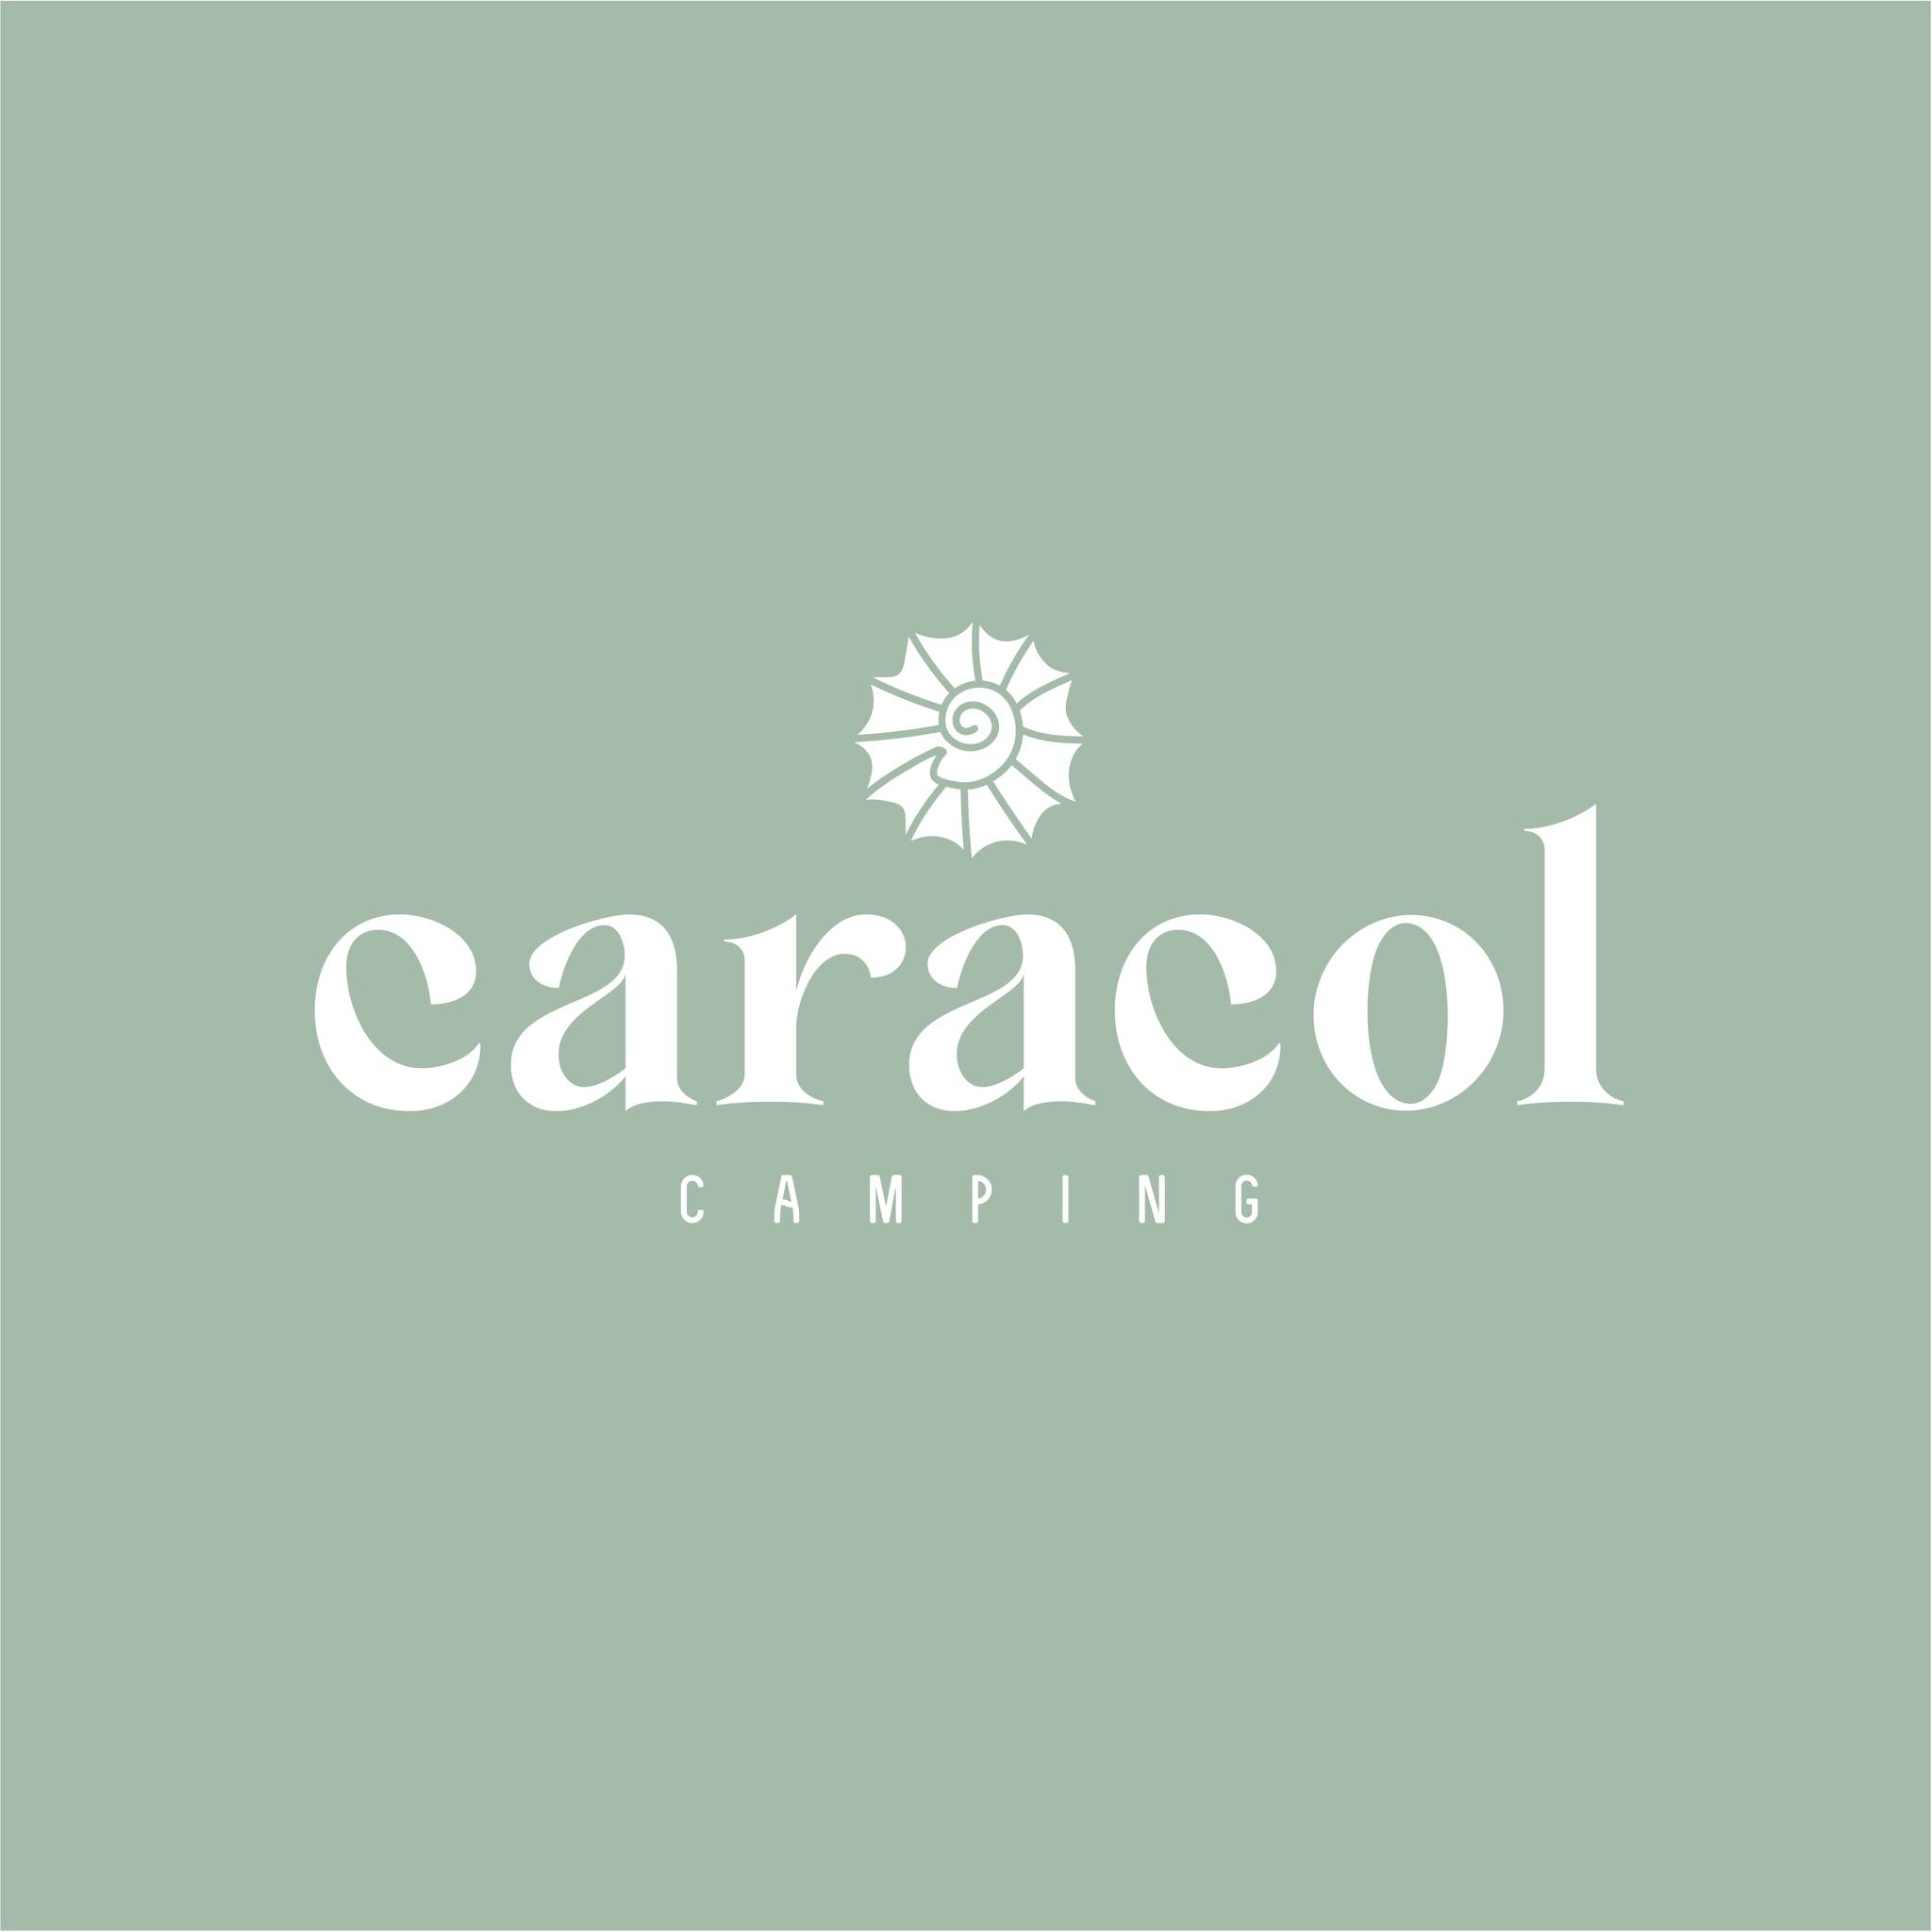 Caracol Camping logo